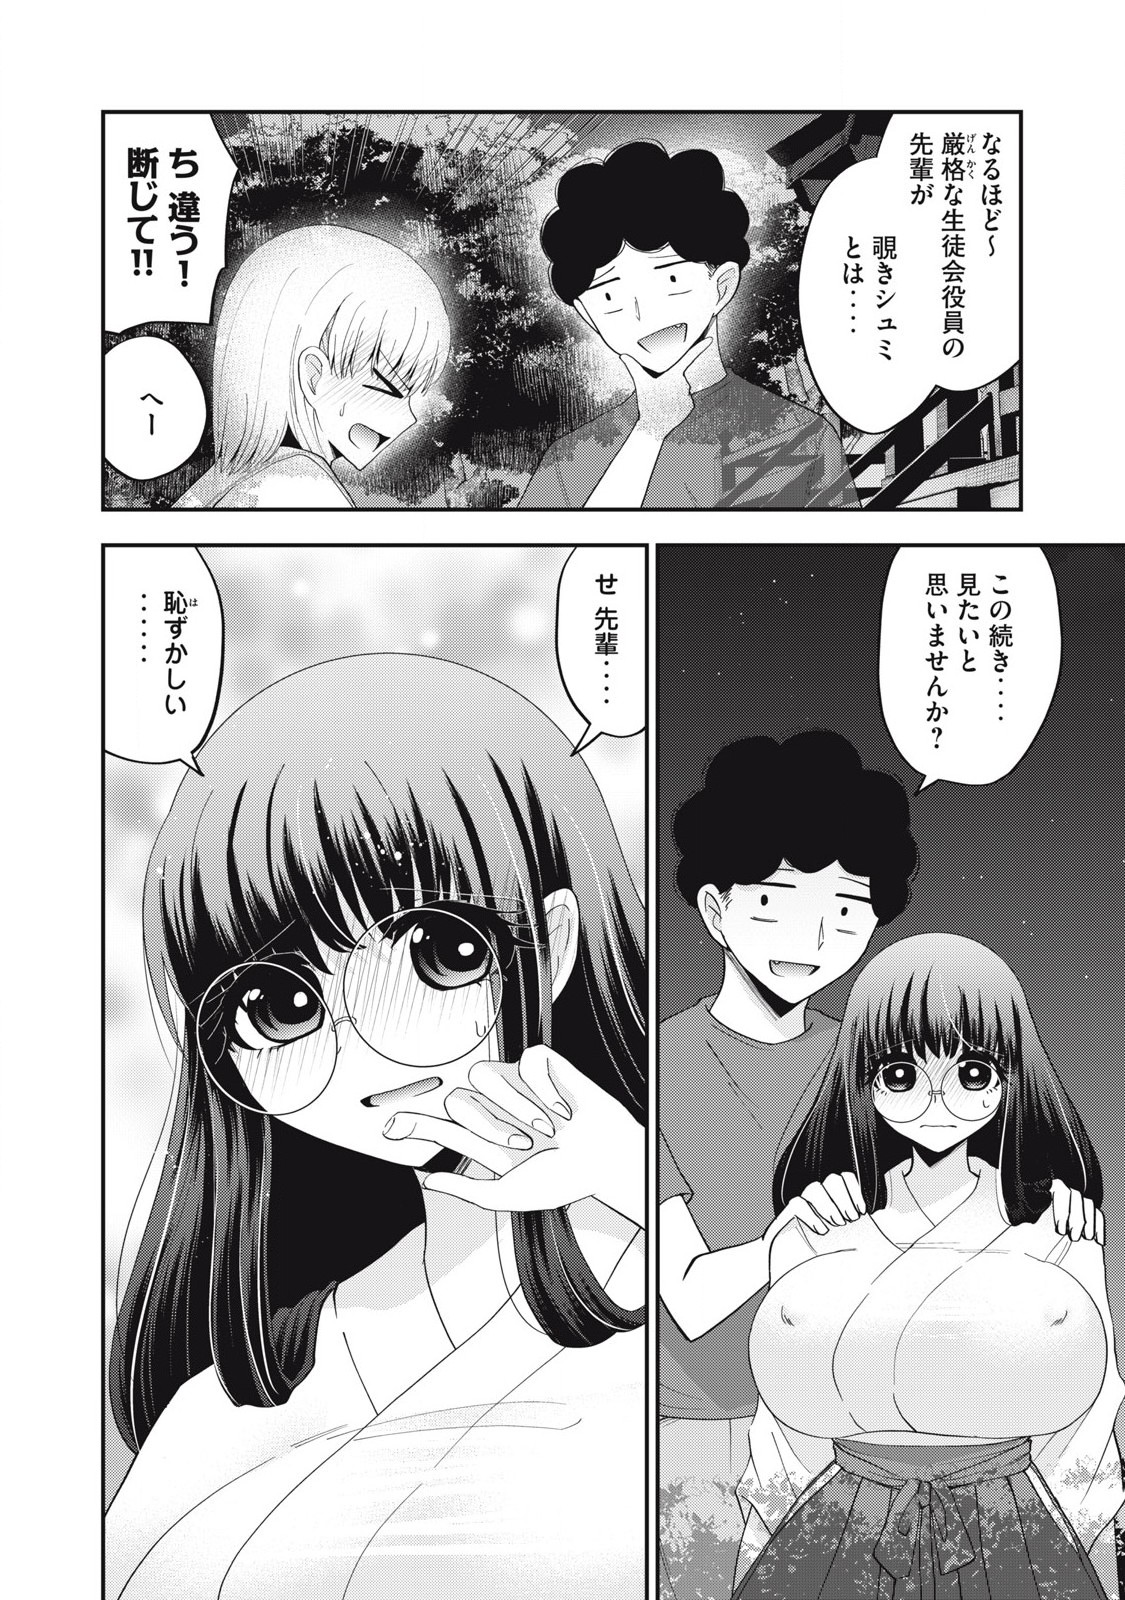 Yumeutsutsu no Hana no Sono - Chapter 23 - Page 2